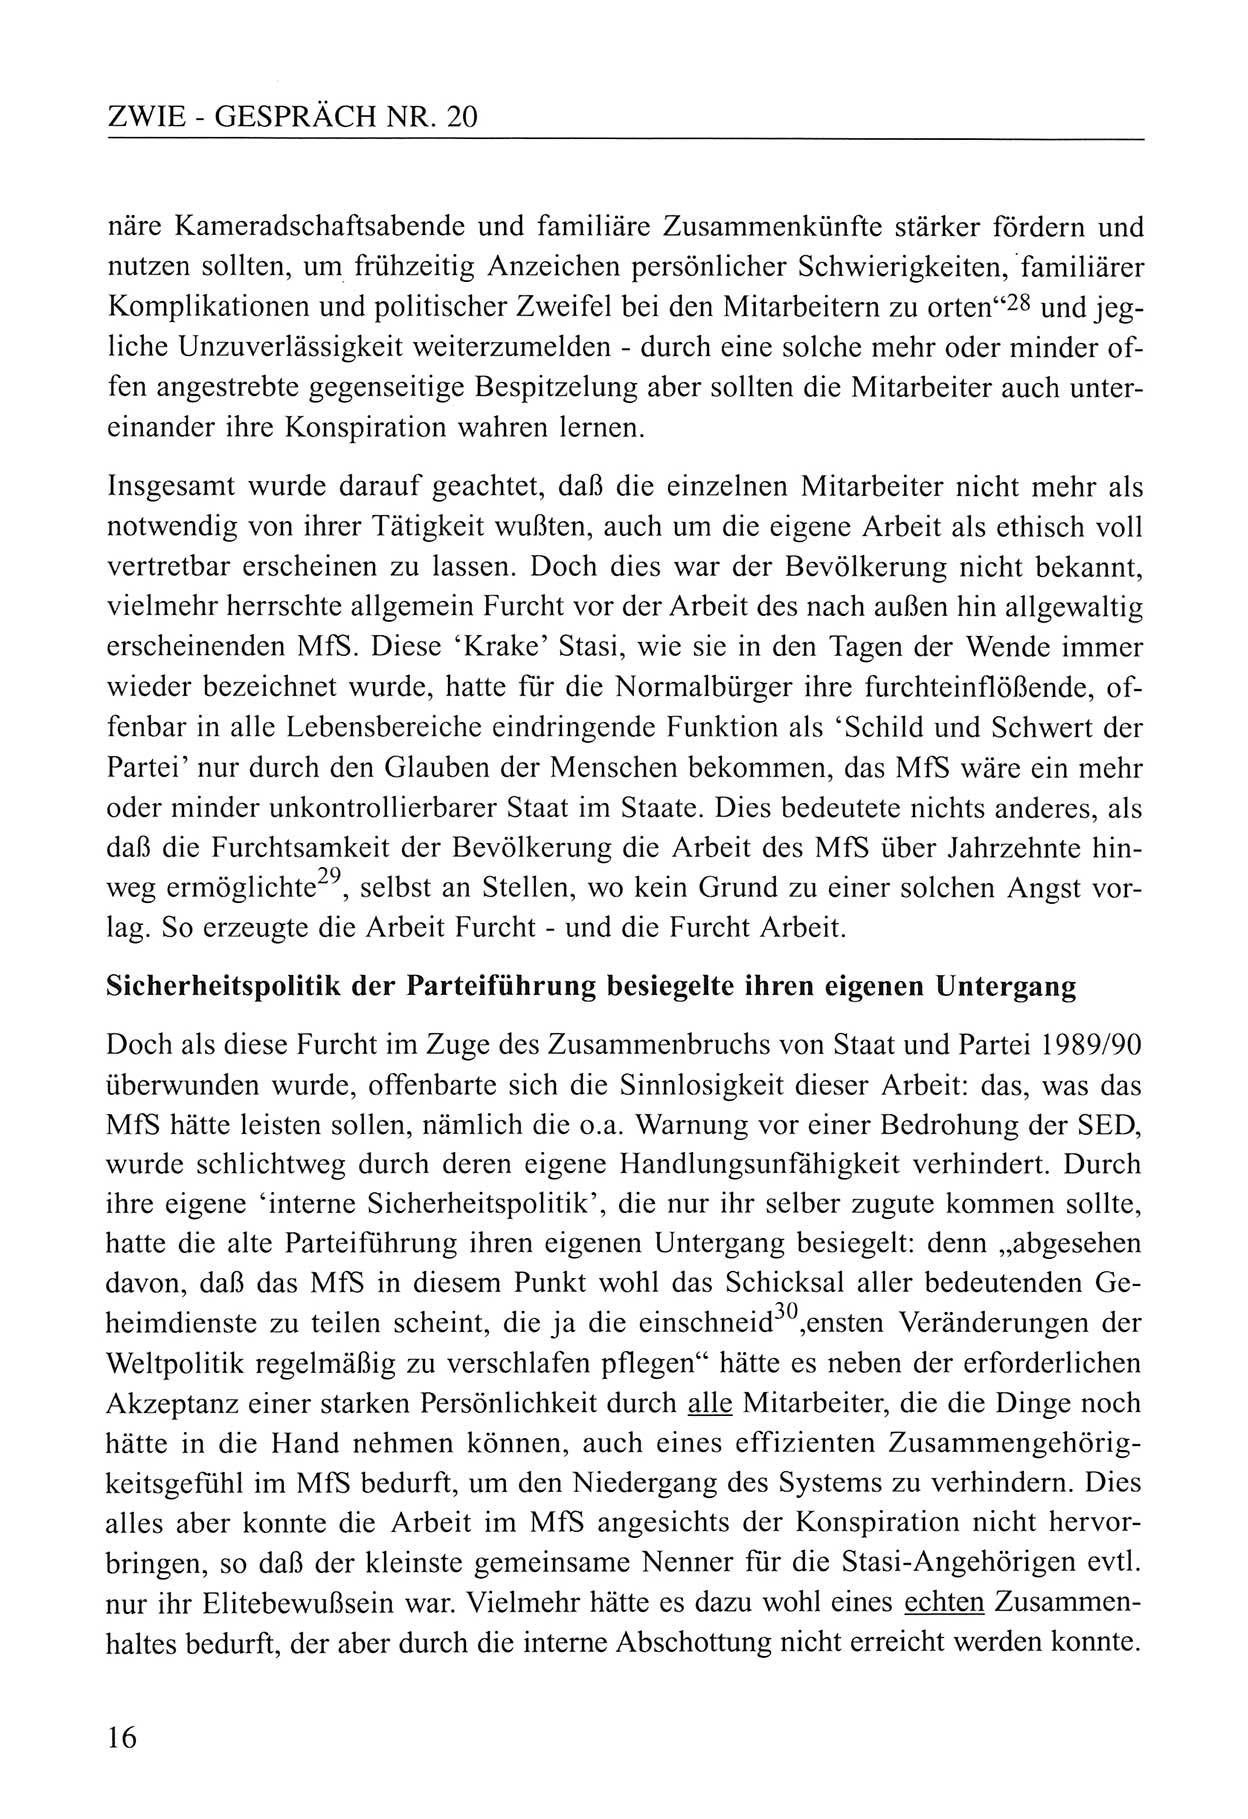 Zwie-Gespräch, Beiträge zum Umgang mit der Staatssicherheits-Vergangenheit [Deutsche Demokratische Republik (DDR)], Ausgabe Nr. 20, Berlin 1994, Seite 16 (Zwie-Gespr. Ausg. 20 1994, S. 16)